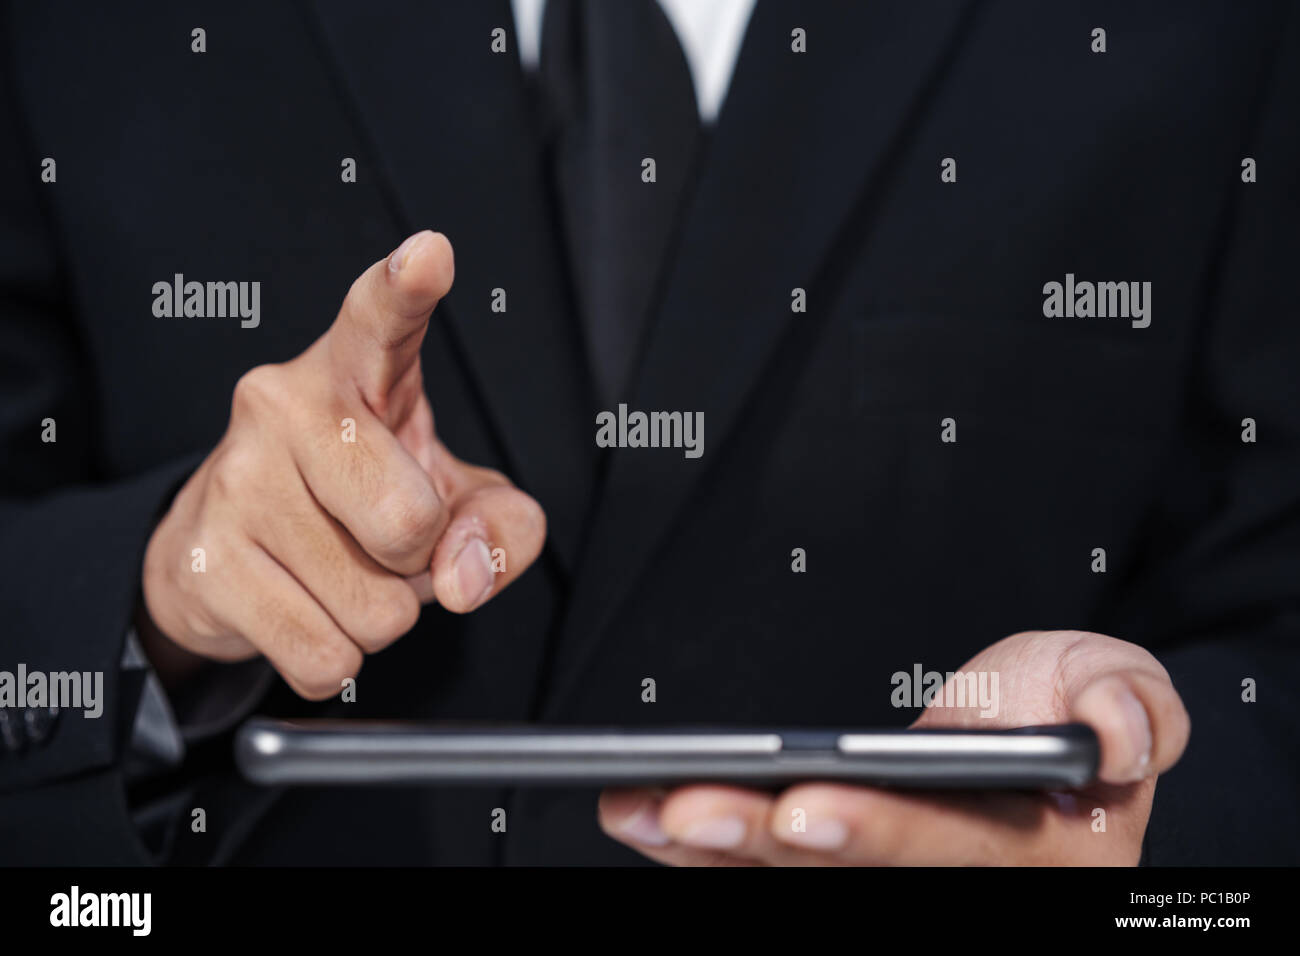 Hombre sujetando el smartphone empresarial y la mano para tocar la pantalla táctil virtual Foto de stock